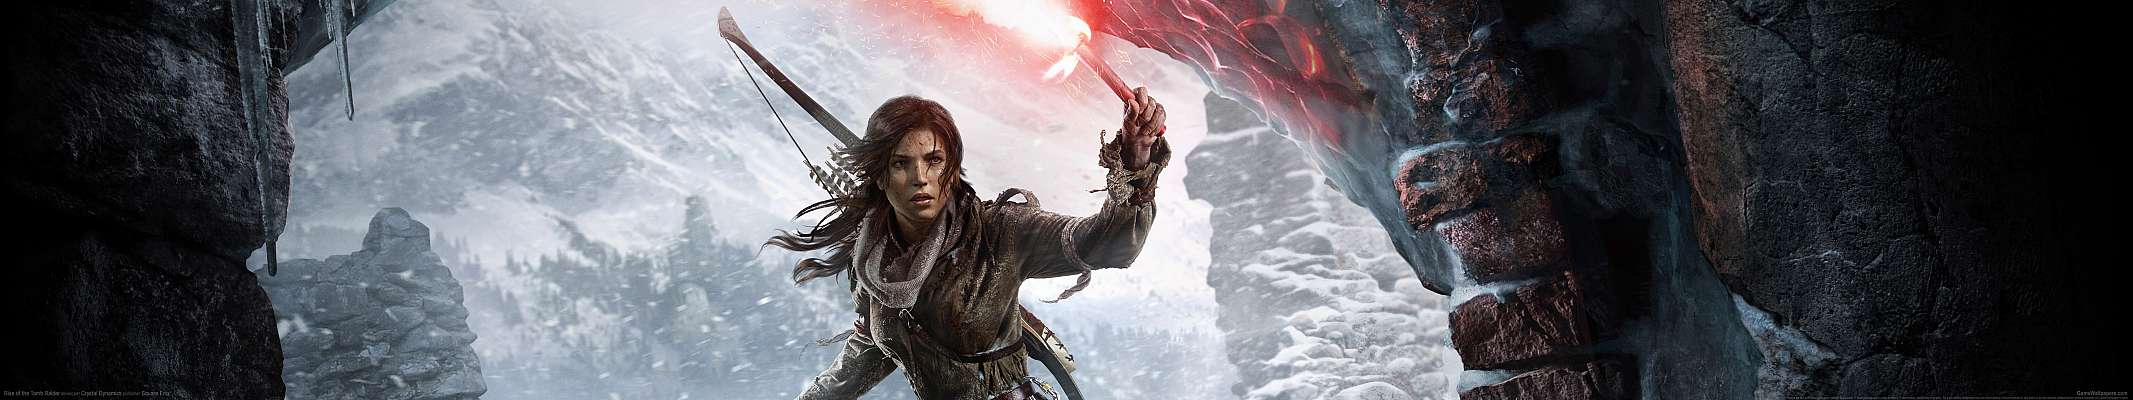 Rise of the Tomb Raider triple screen fondo de escritorio